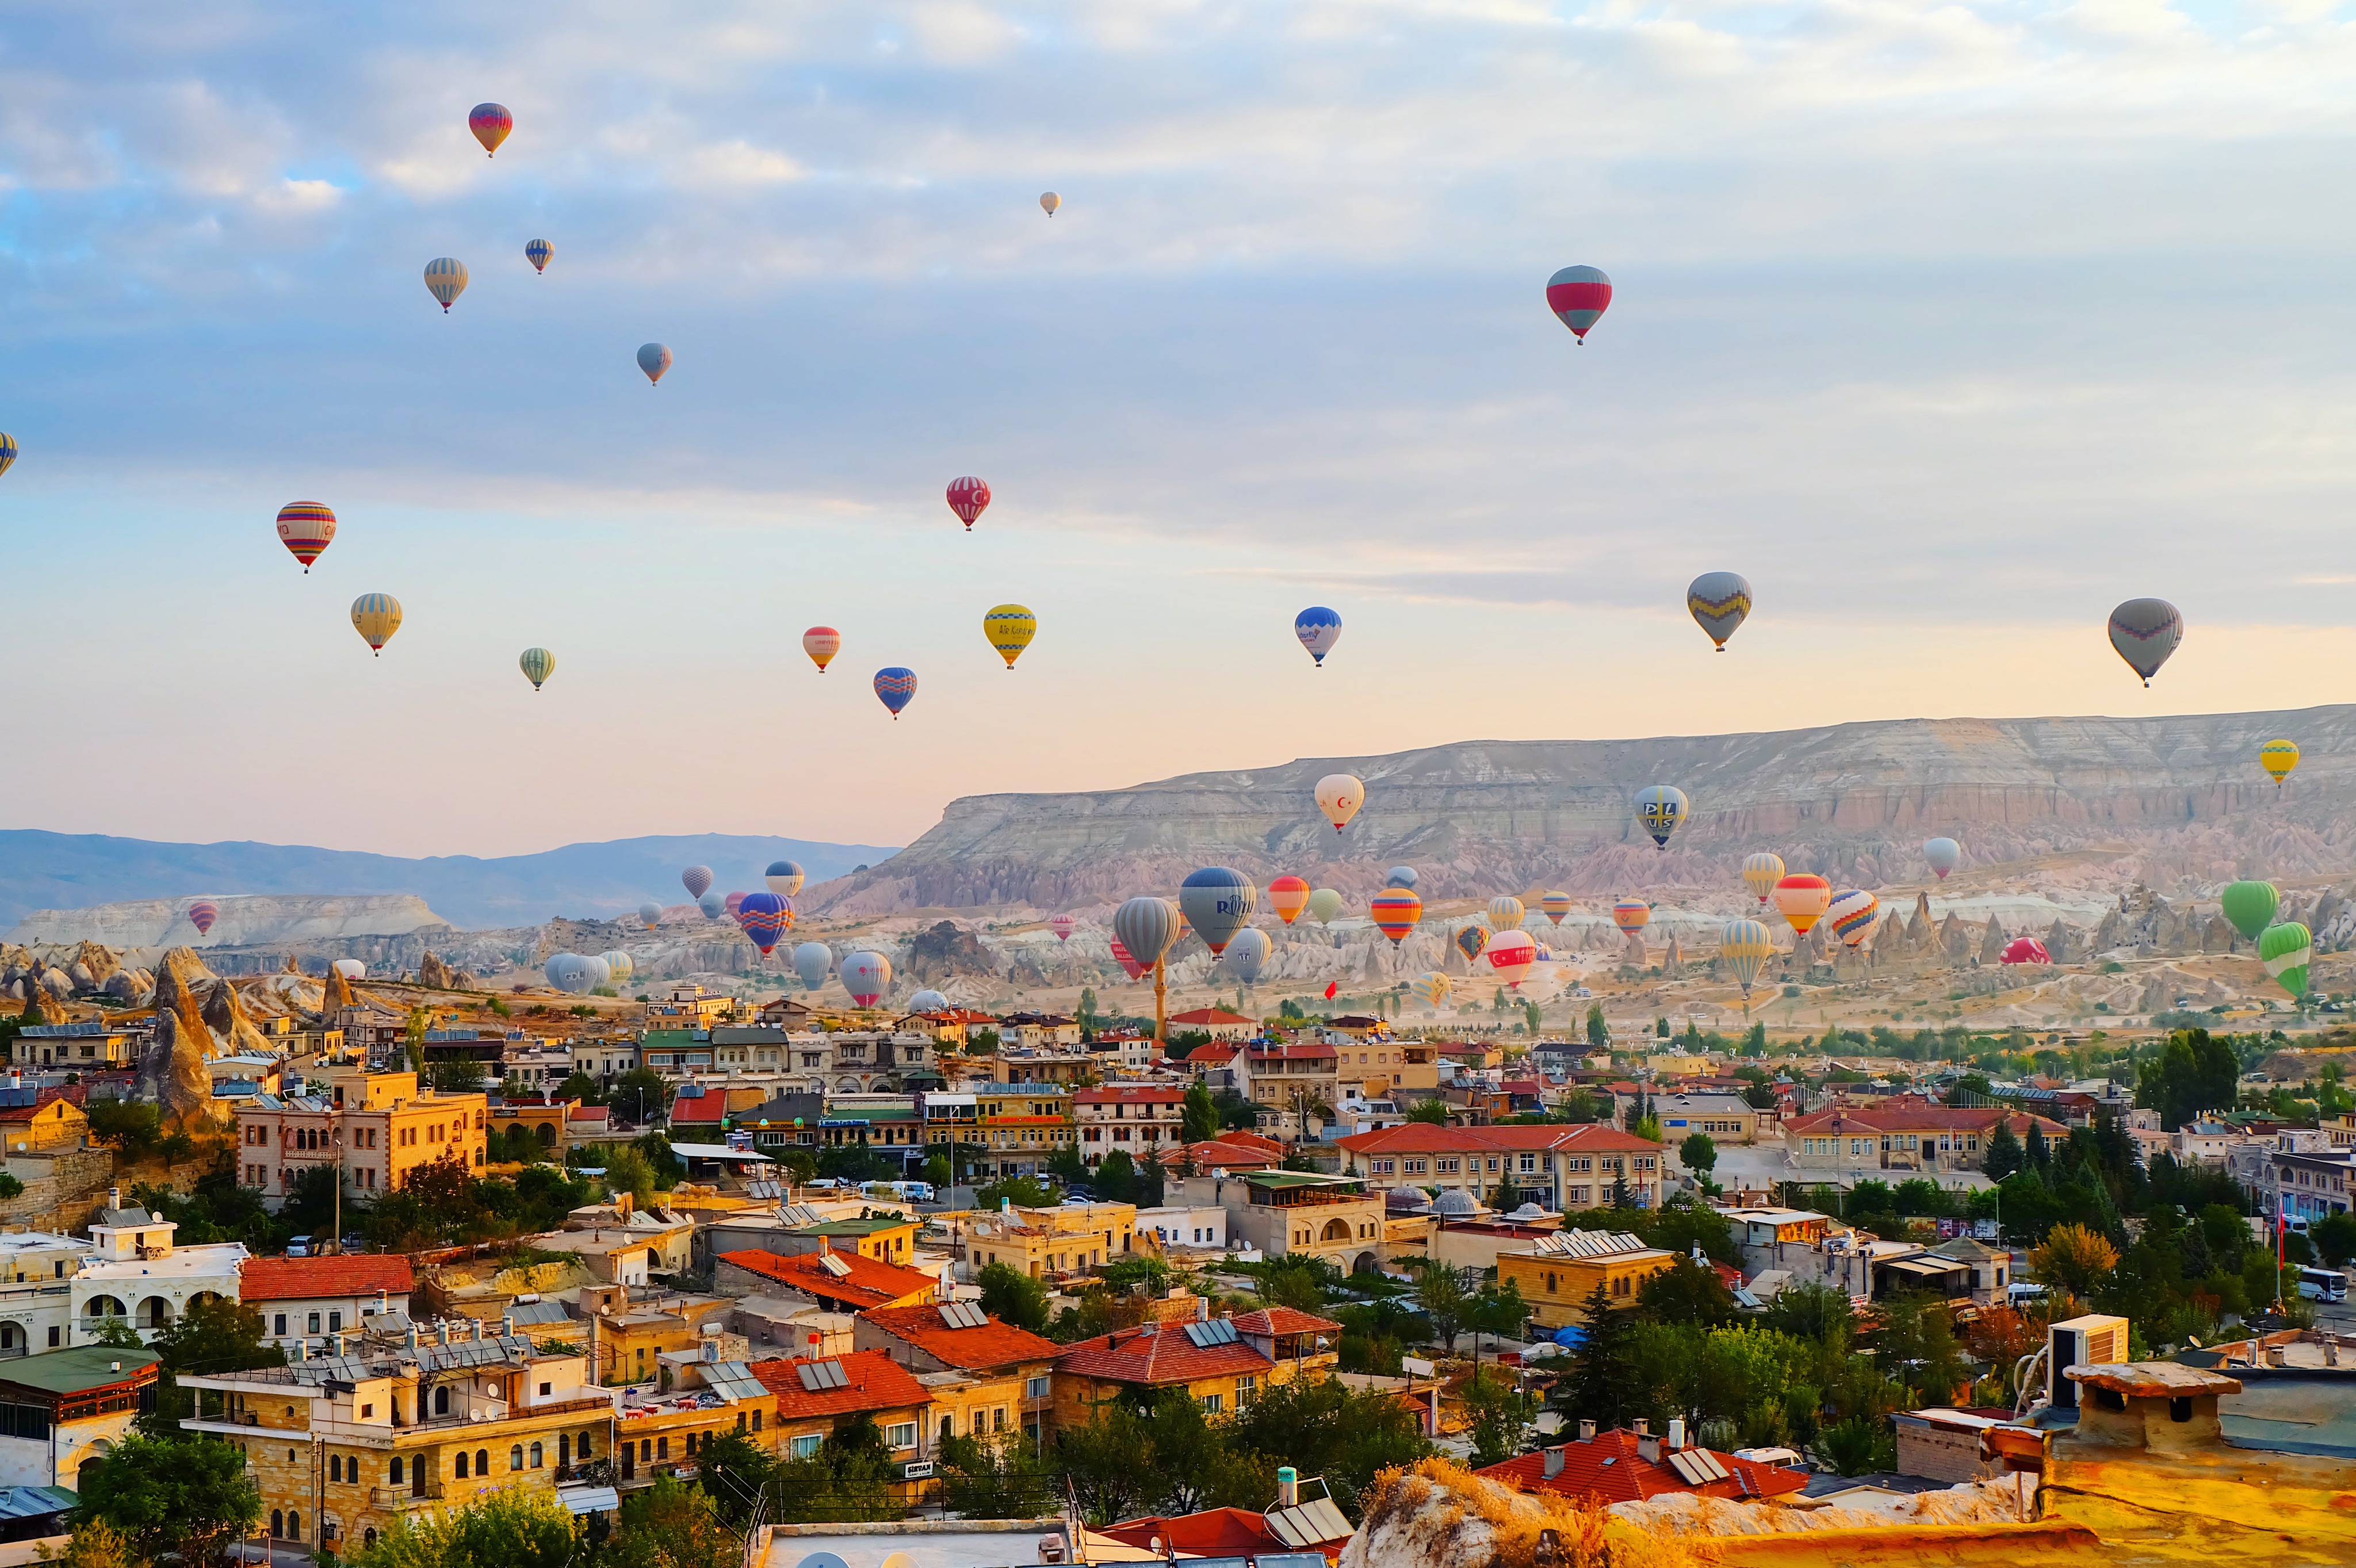 卡帕多奇亚,坐热气球和太阳一起升起,才知道土耳其到底有多浪漫